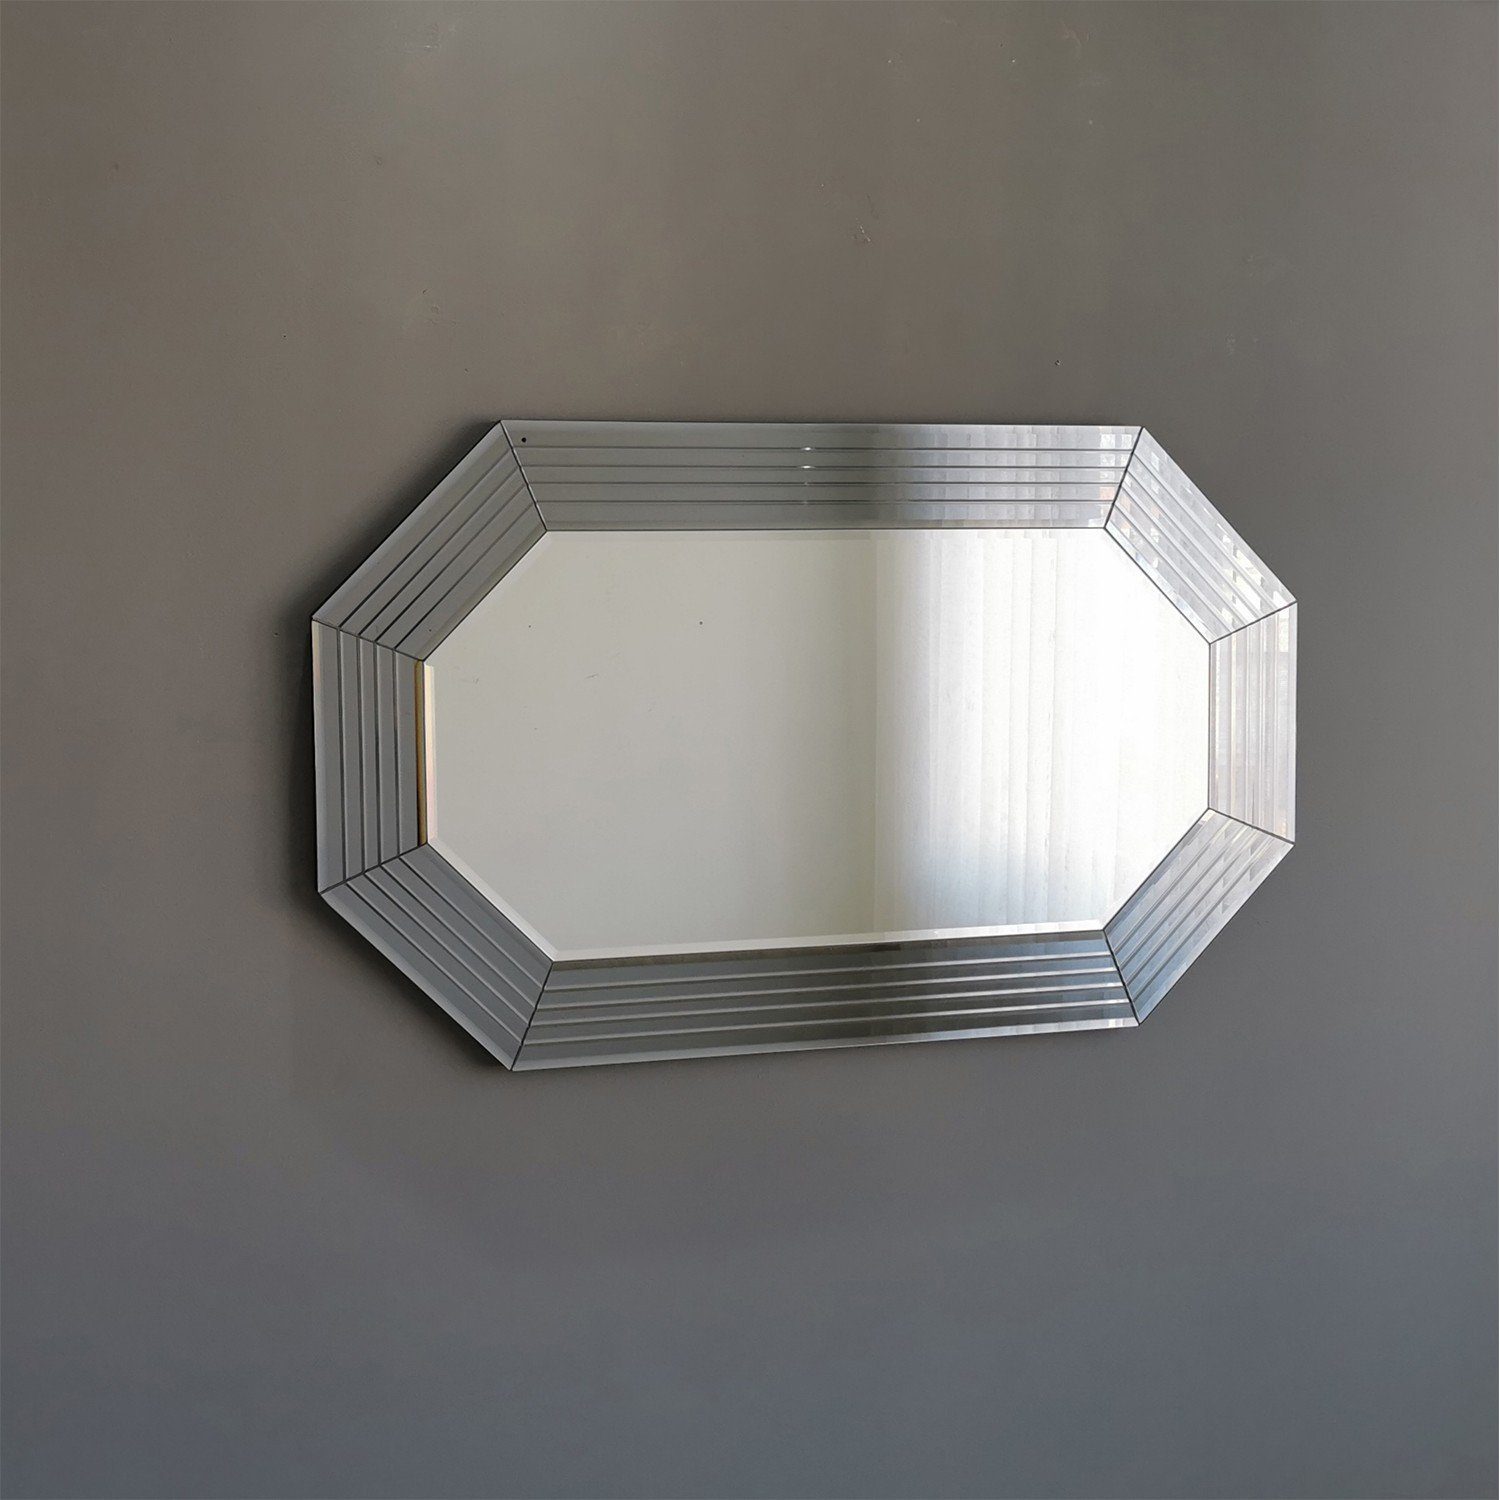 Wandspiegel 100% Silber, 60x100x2,2 Skye cm, Decor MDF A311YNOS,